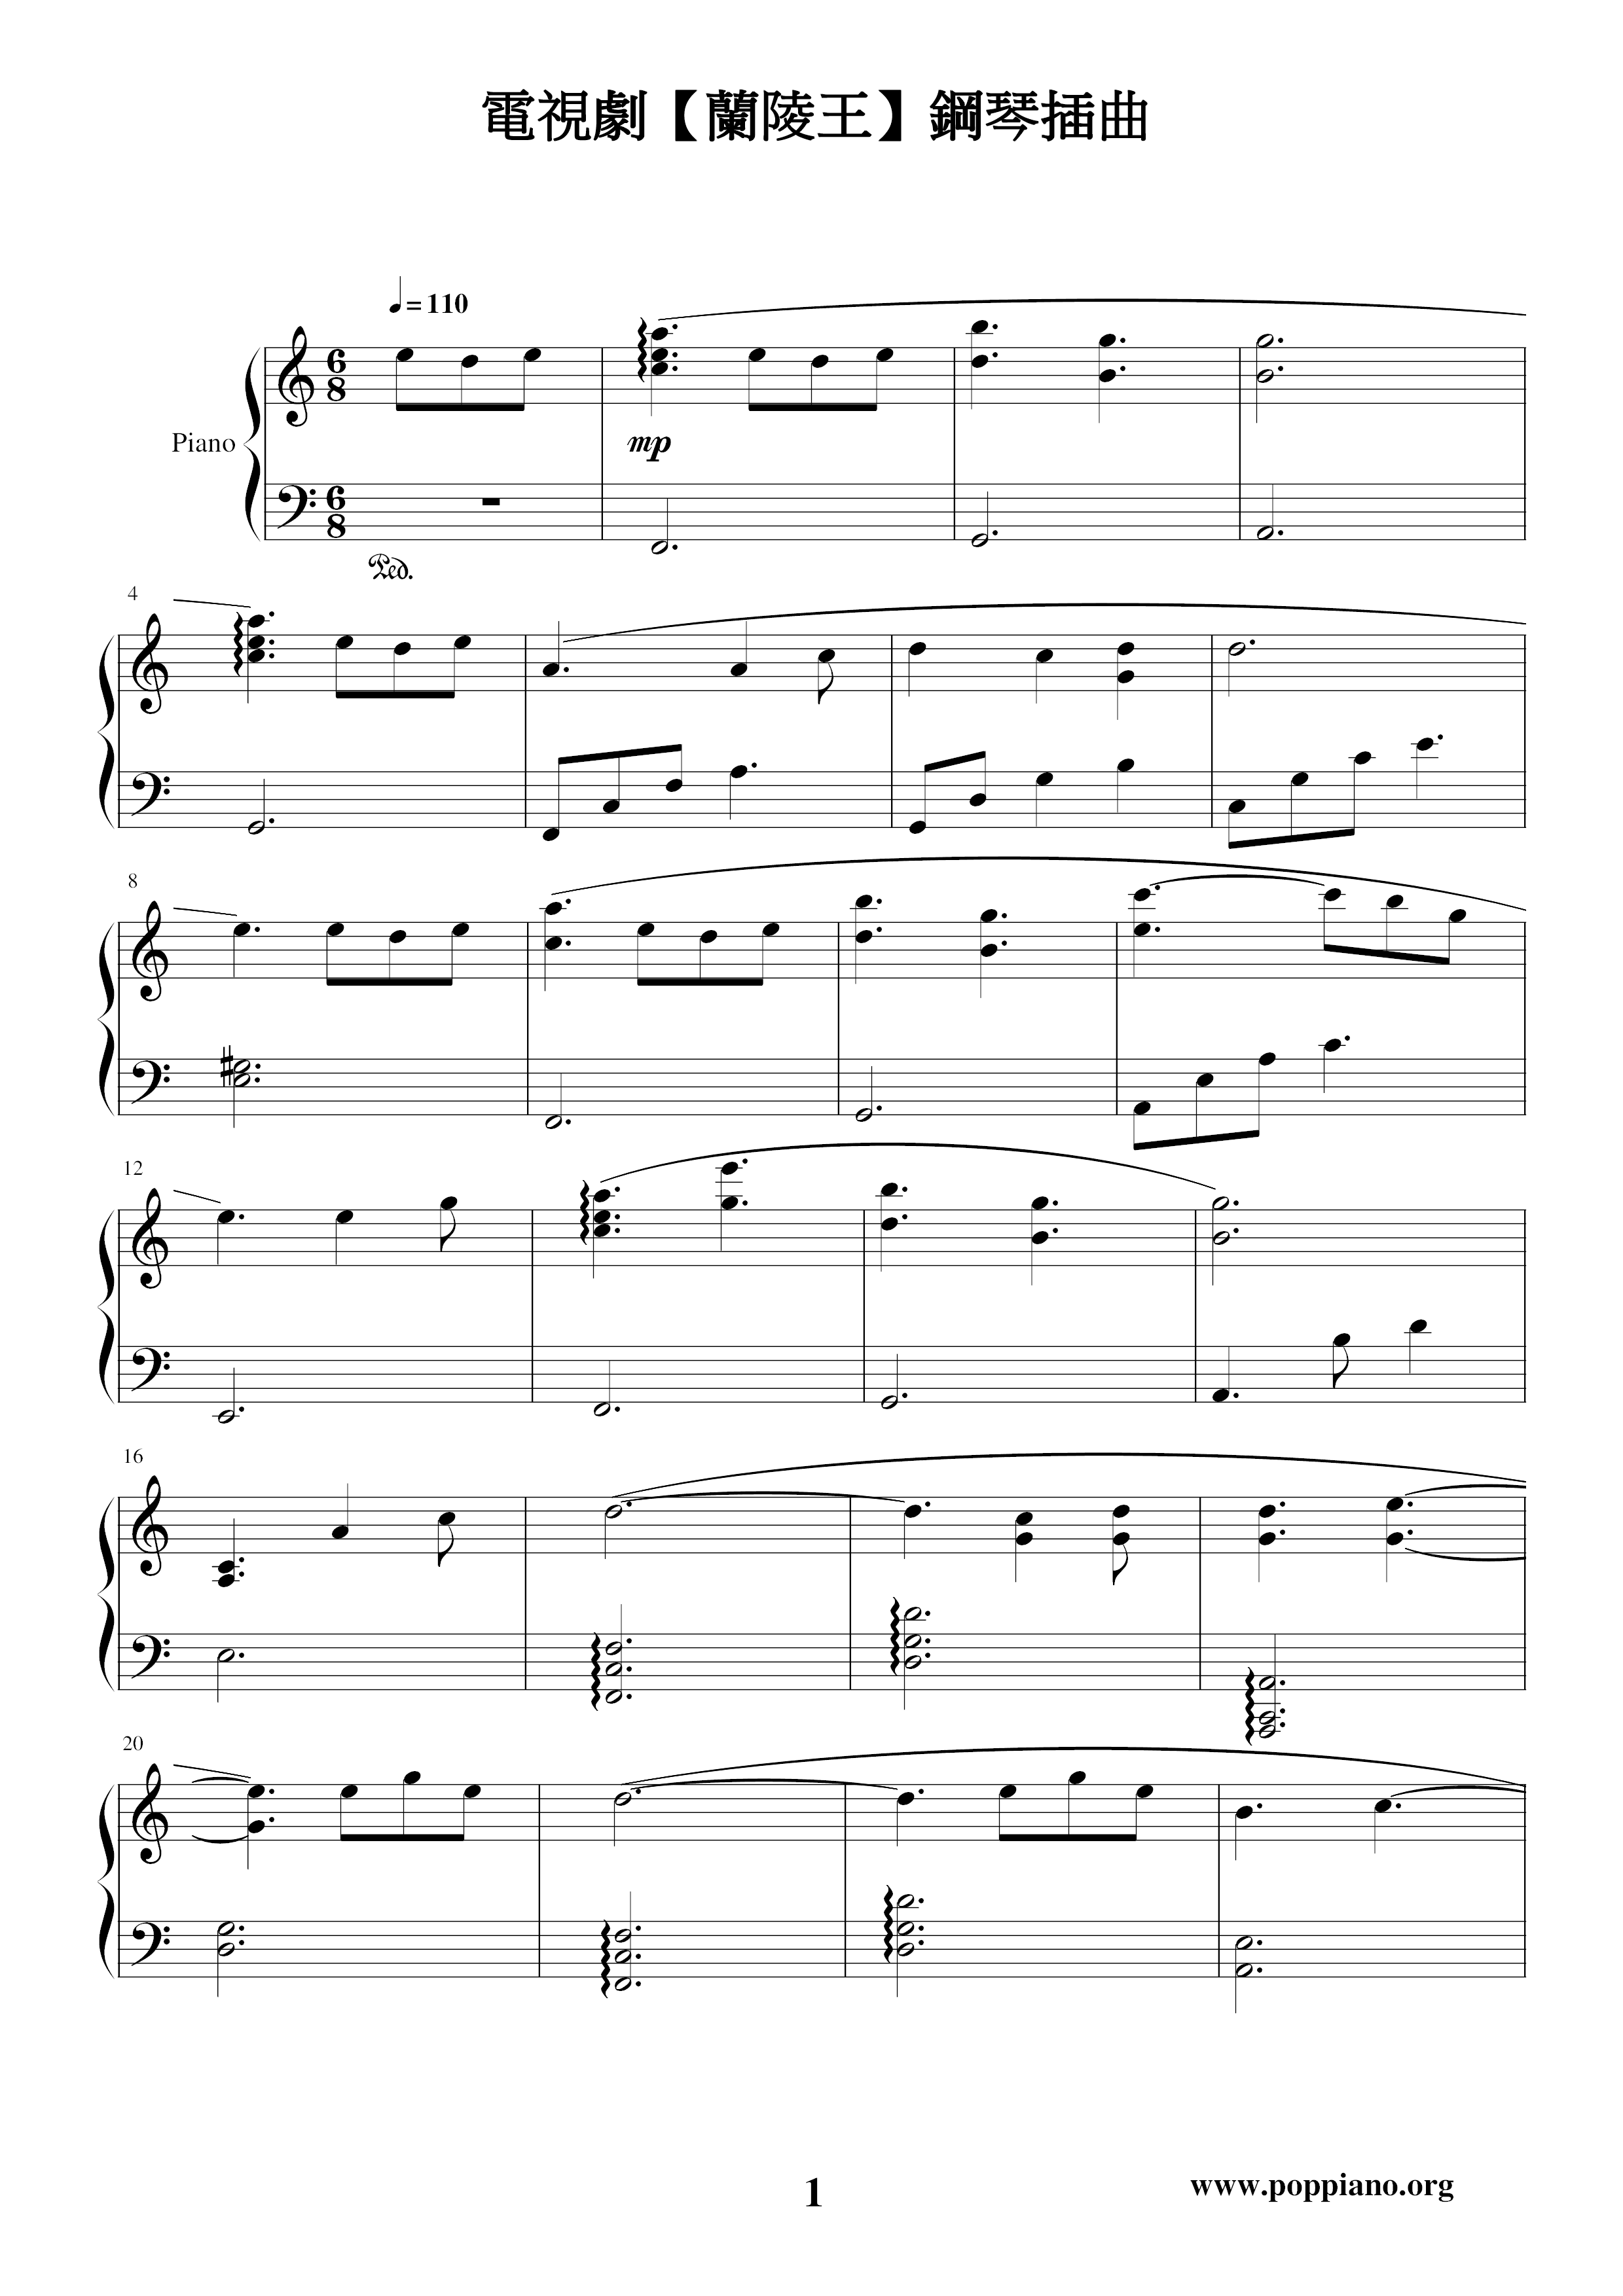 Prince of Lan Ling-Piano Episode 4 Score